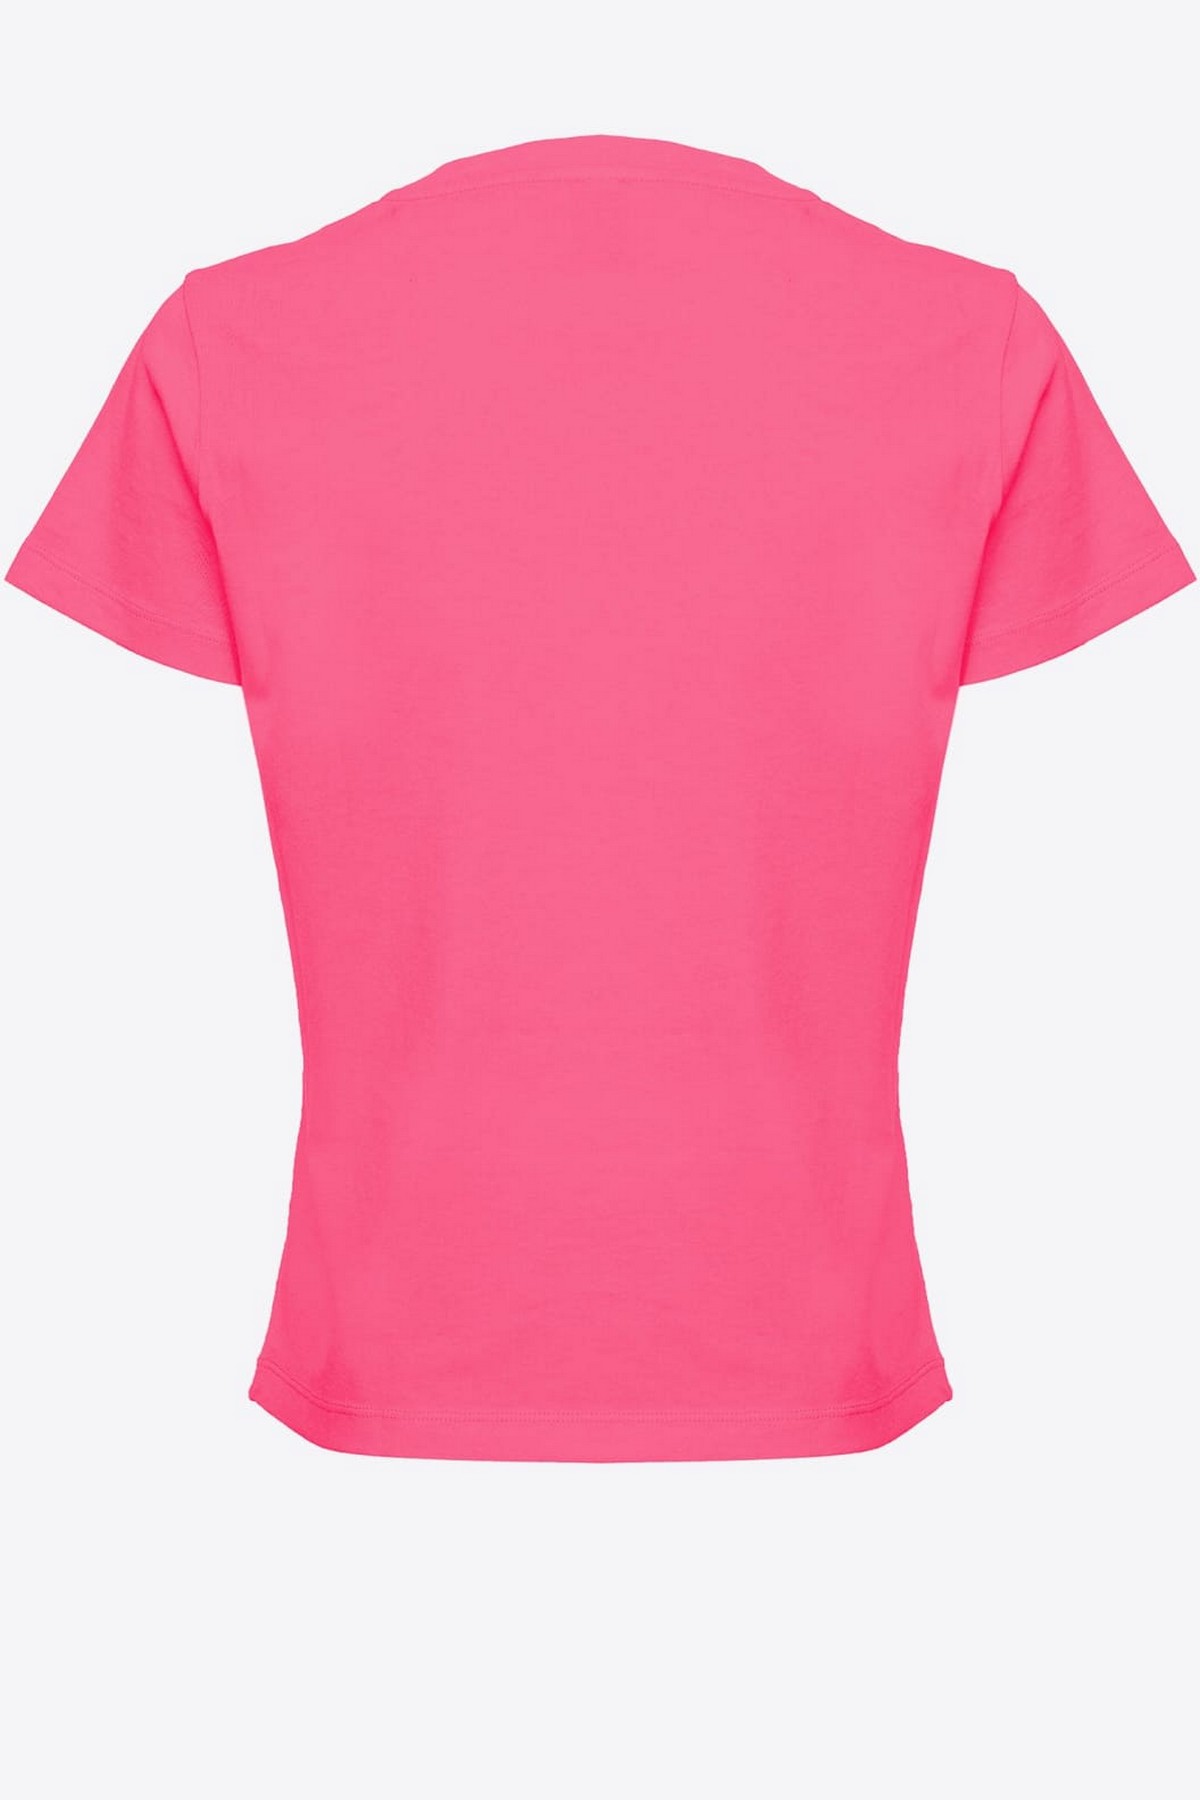 Pinko - BASICO P47 - 1G173G - T-shirt Pinko logo fuchsia - uitverkocht